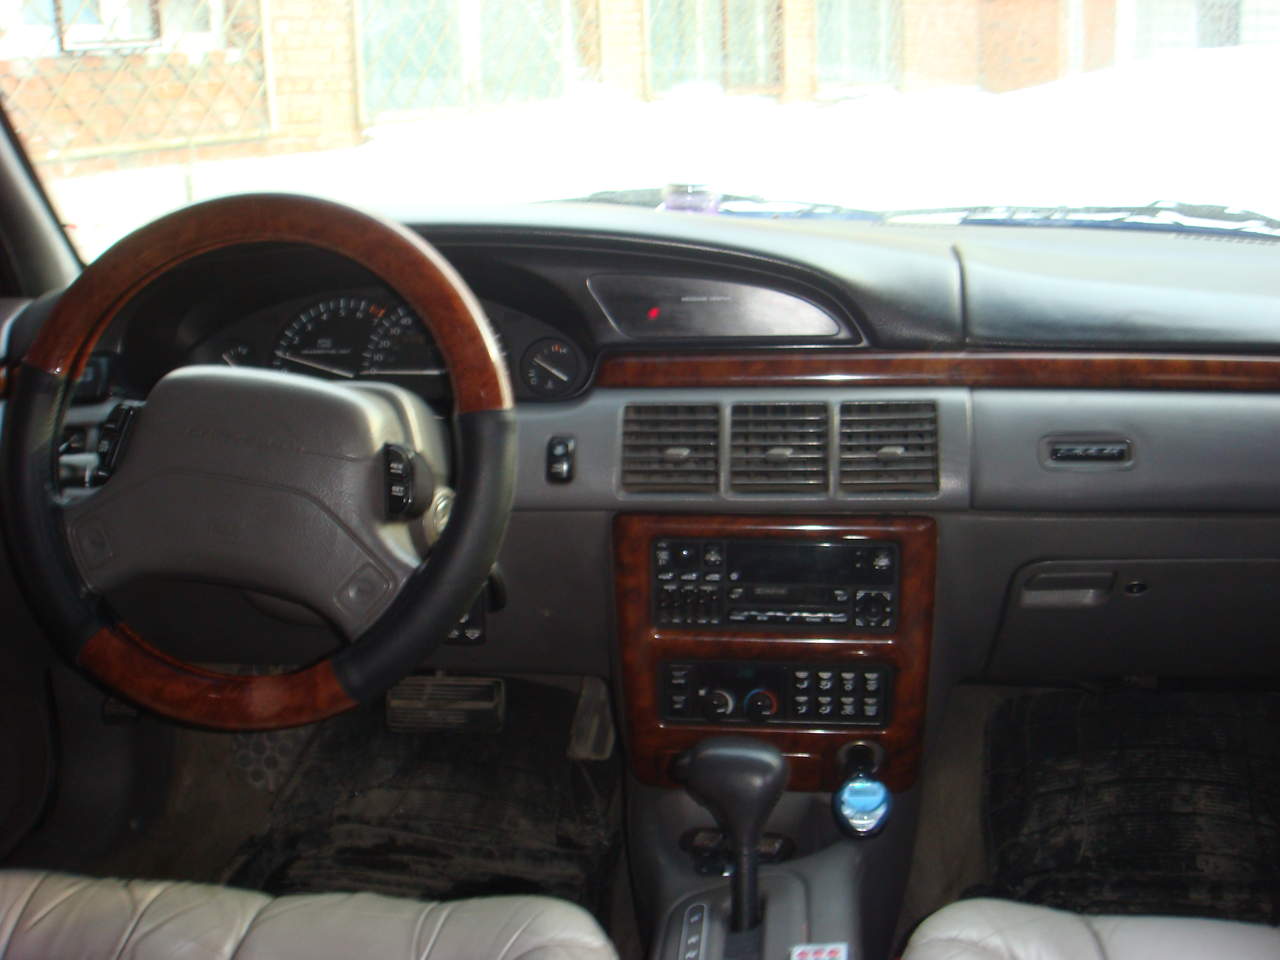 1996 Chrysler lhs interior #3